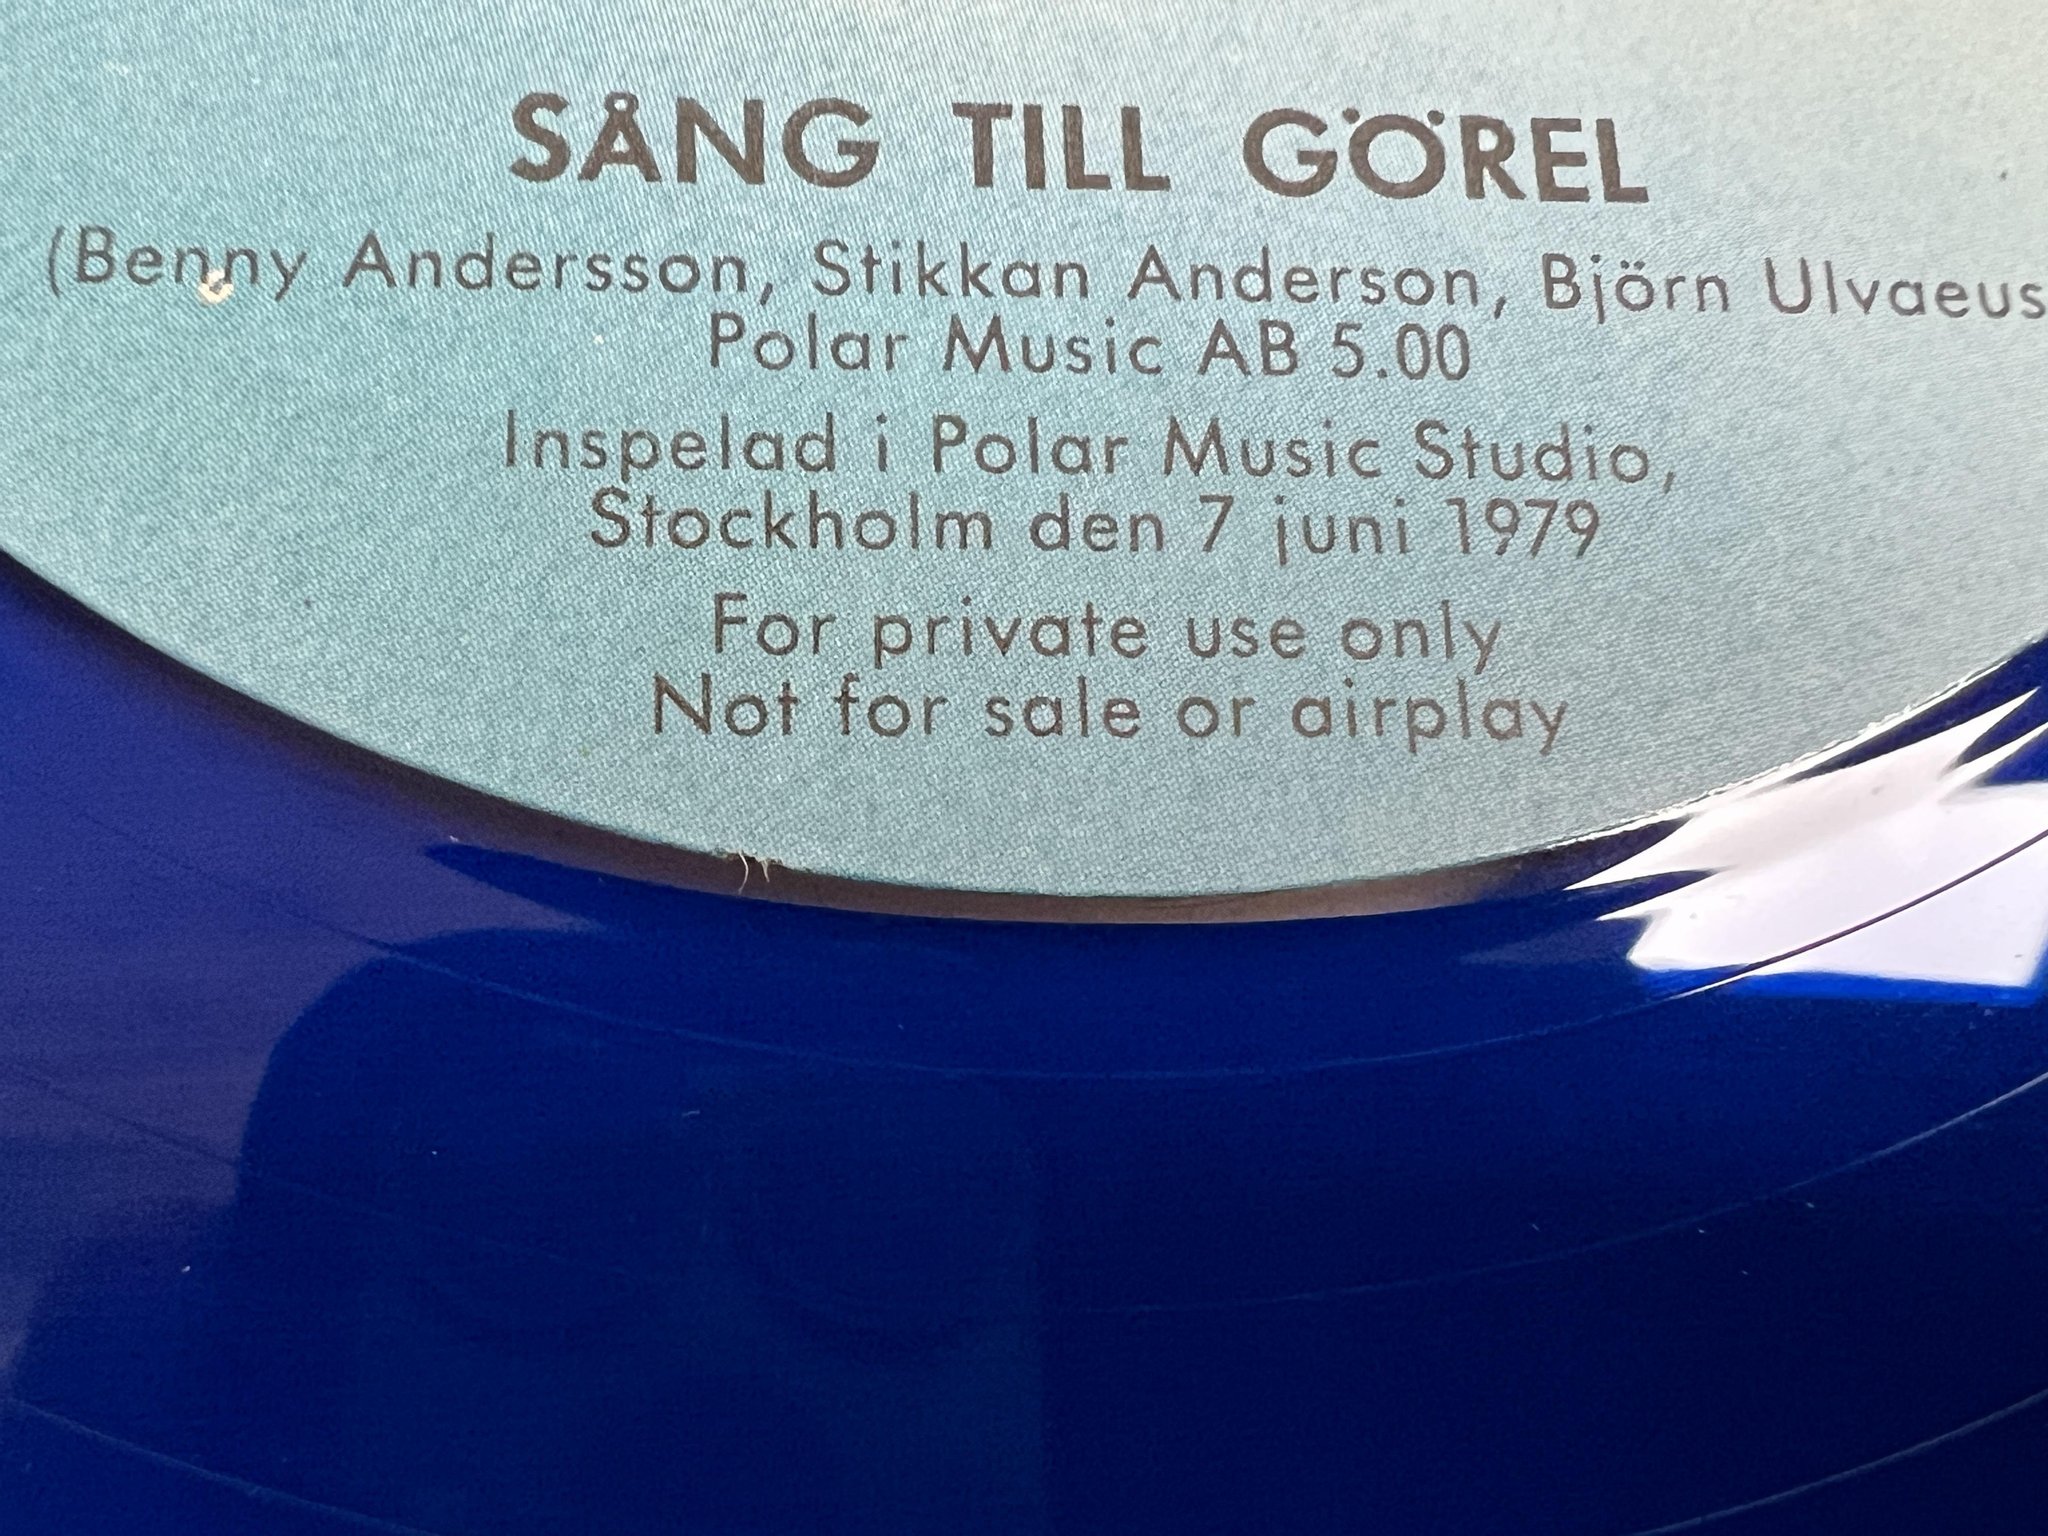 Omslagsbild för skivan ABBA & STIKKAN Sång Till Görel 12" -79 Swe POLAR JUB 30 *** MEGA MEGA RARE ***